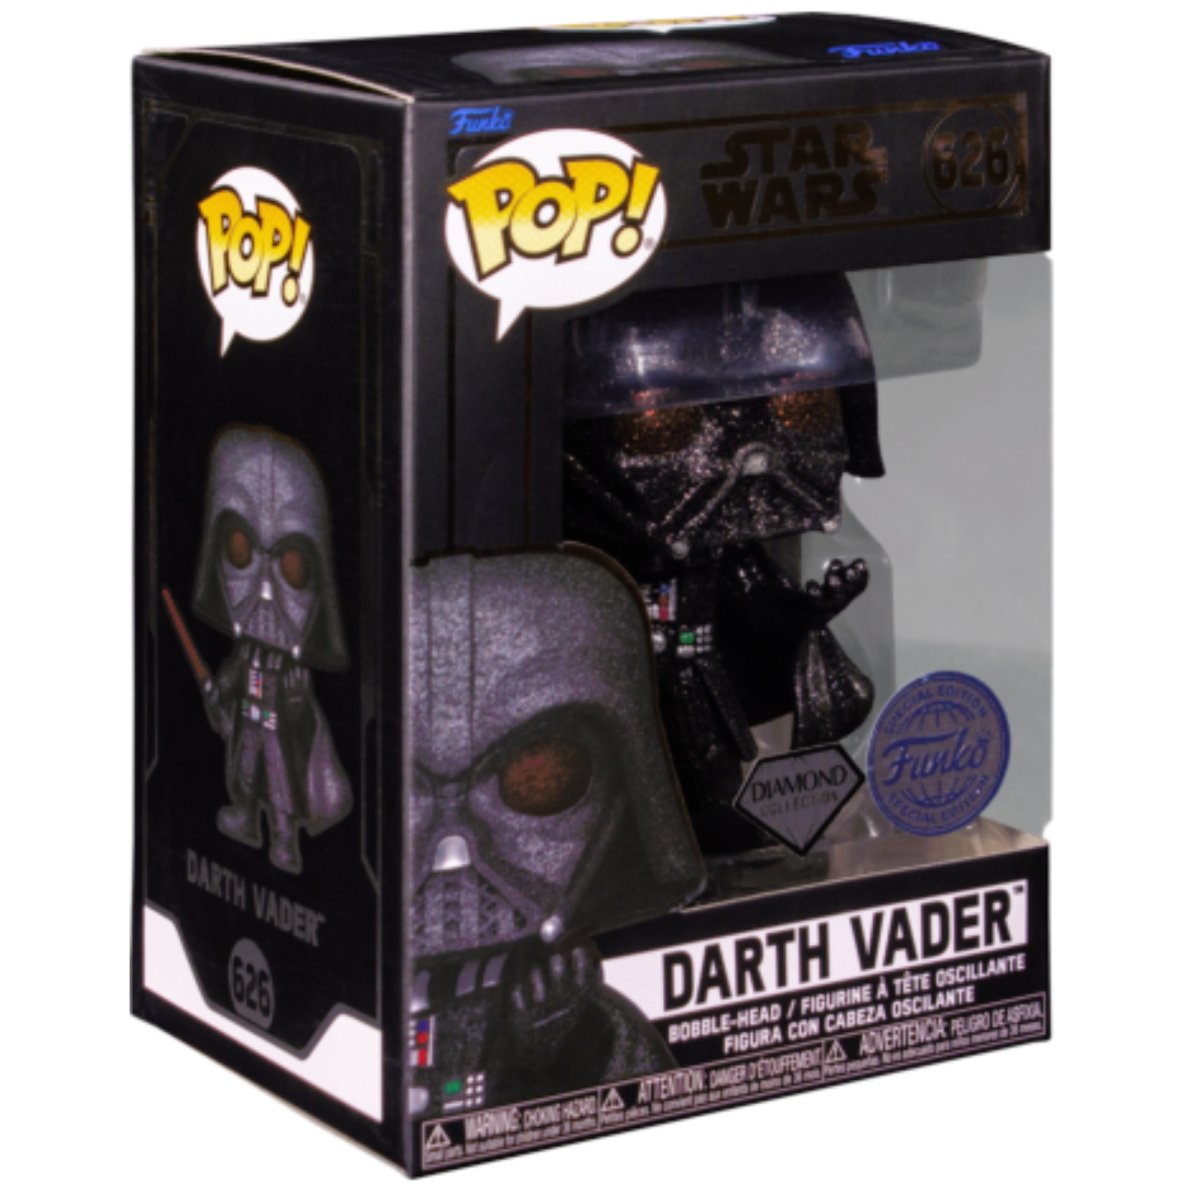 Star Wars - Darth Vader (Diamond Special Edition) #626 - Funko Pop! Vinyl Star Wars - Persona Toys